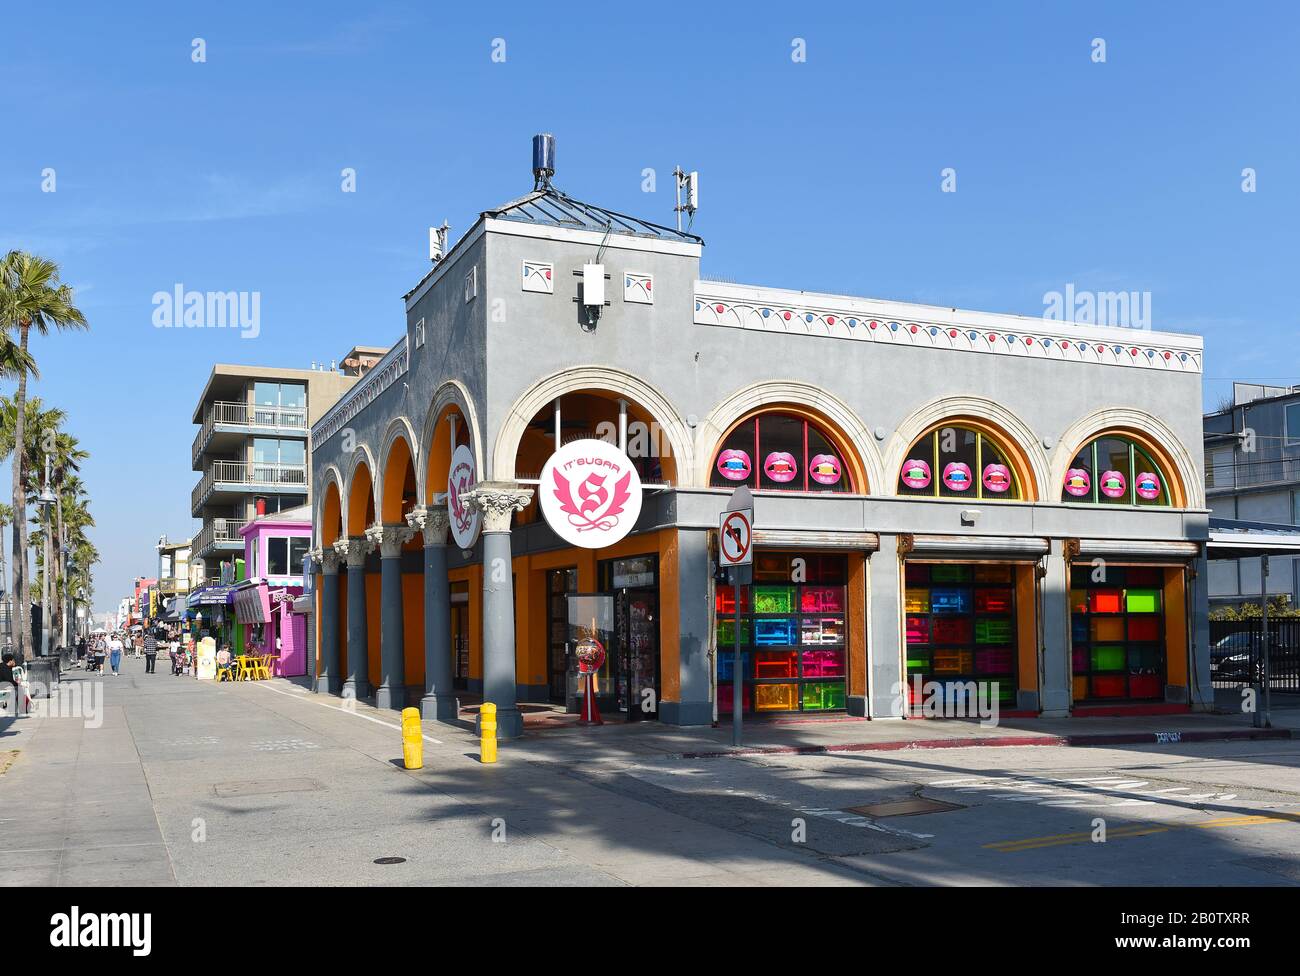 Venezia, CALIFORNIA - 17 FEB 2020: IT'SUGAR è un negozio di caramelle alla moda specializzato in dolci innovativi, regali di novità divertenti e caramelle giganti. Foto Stock